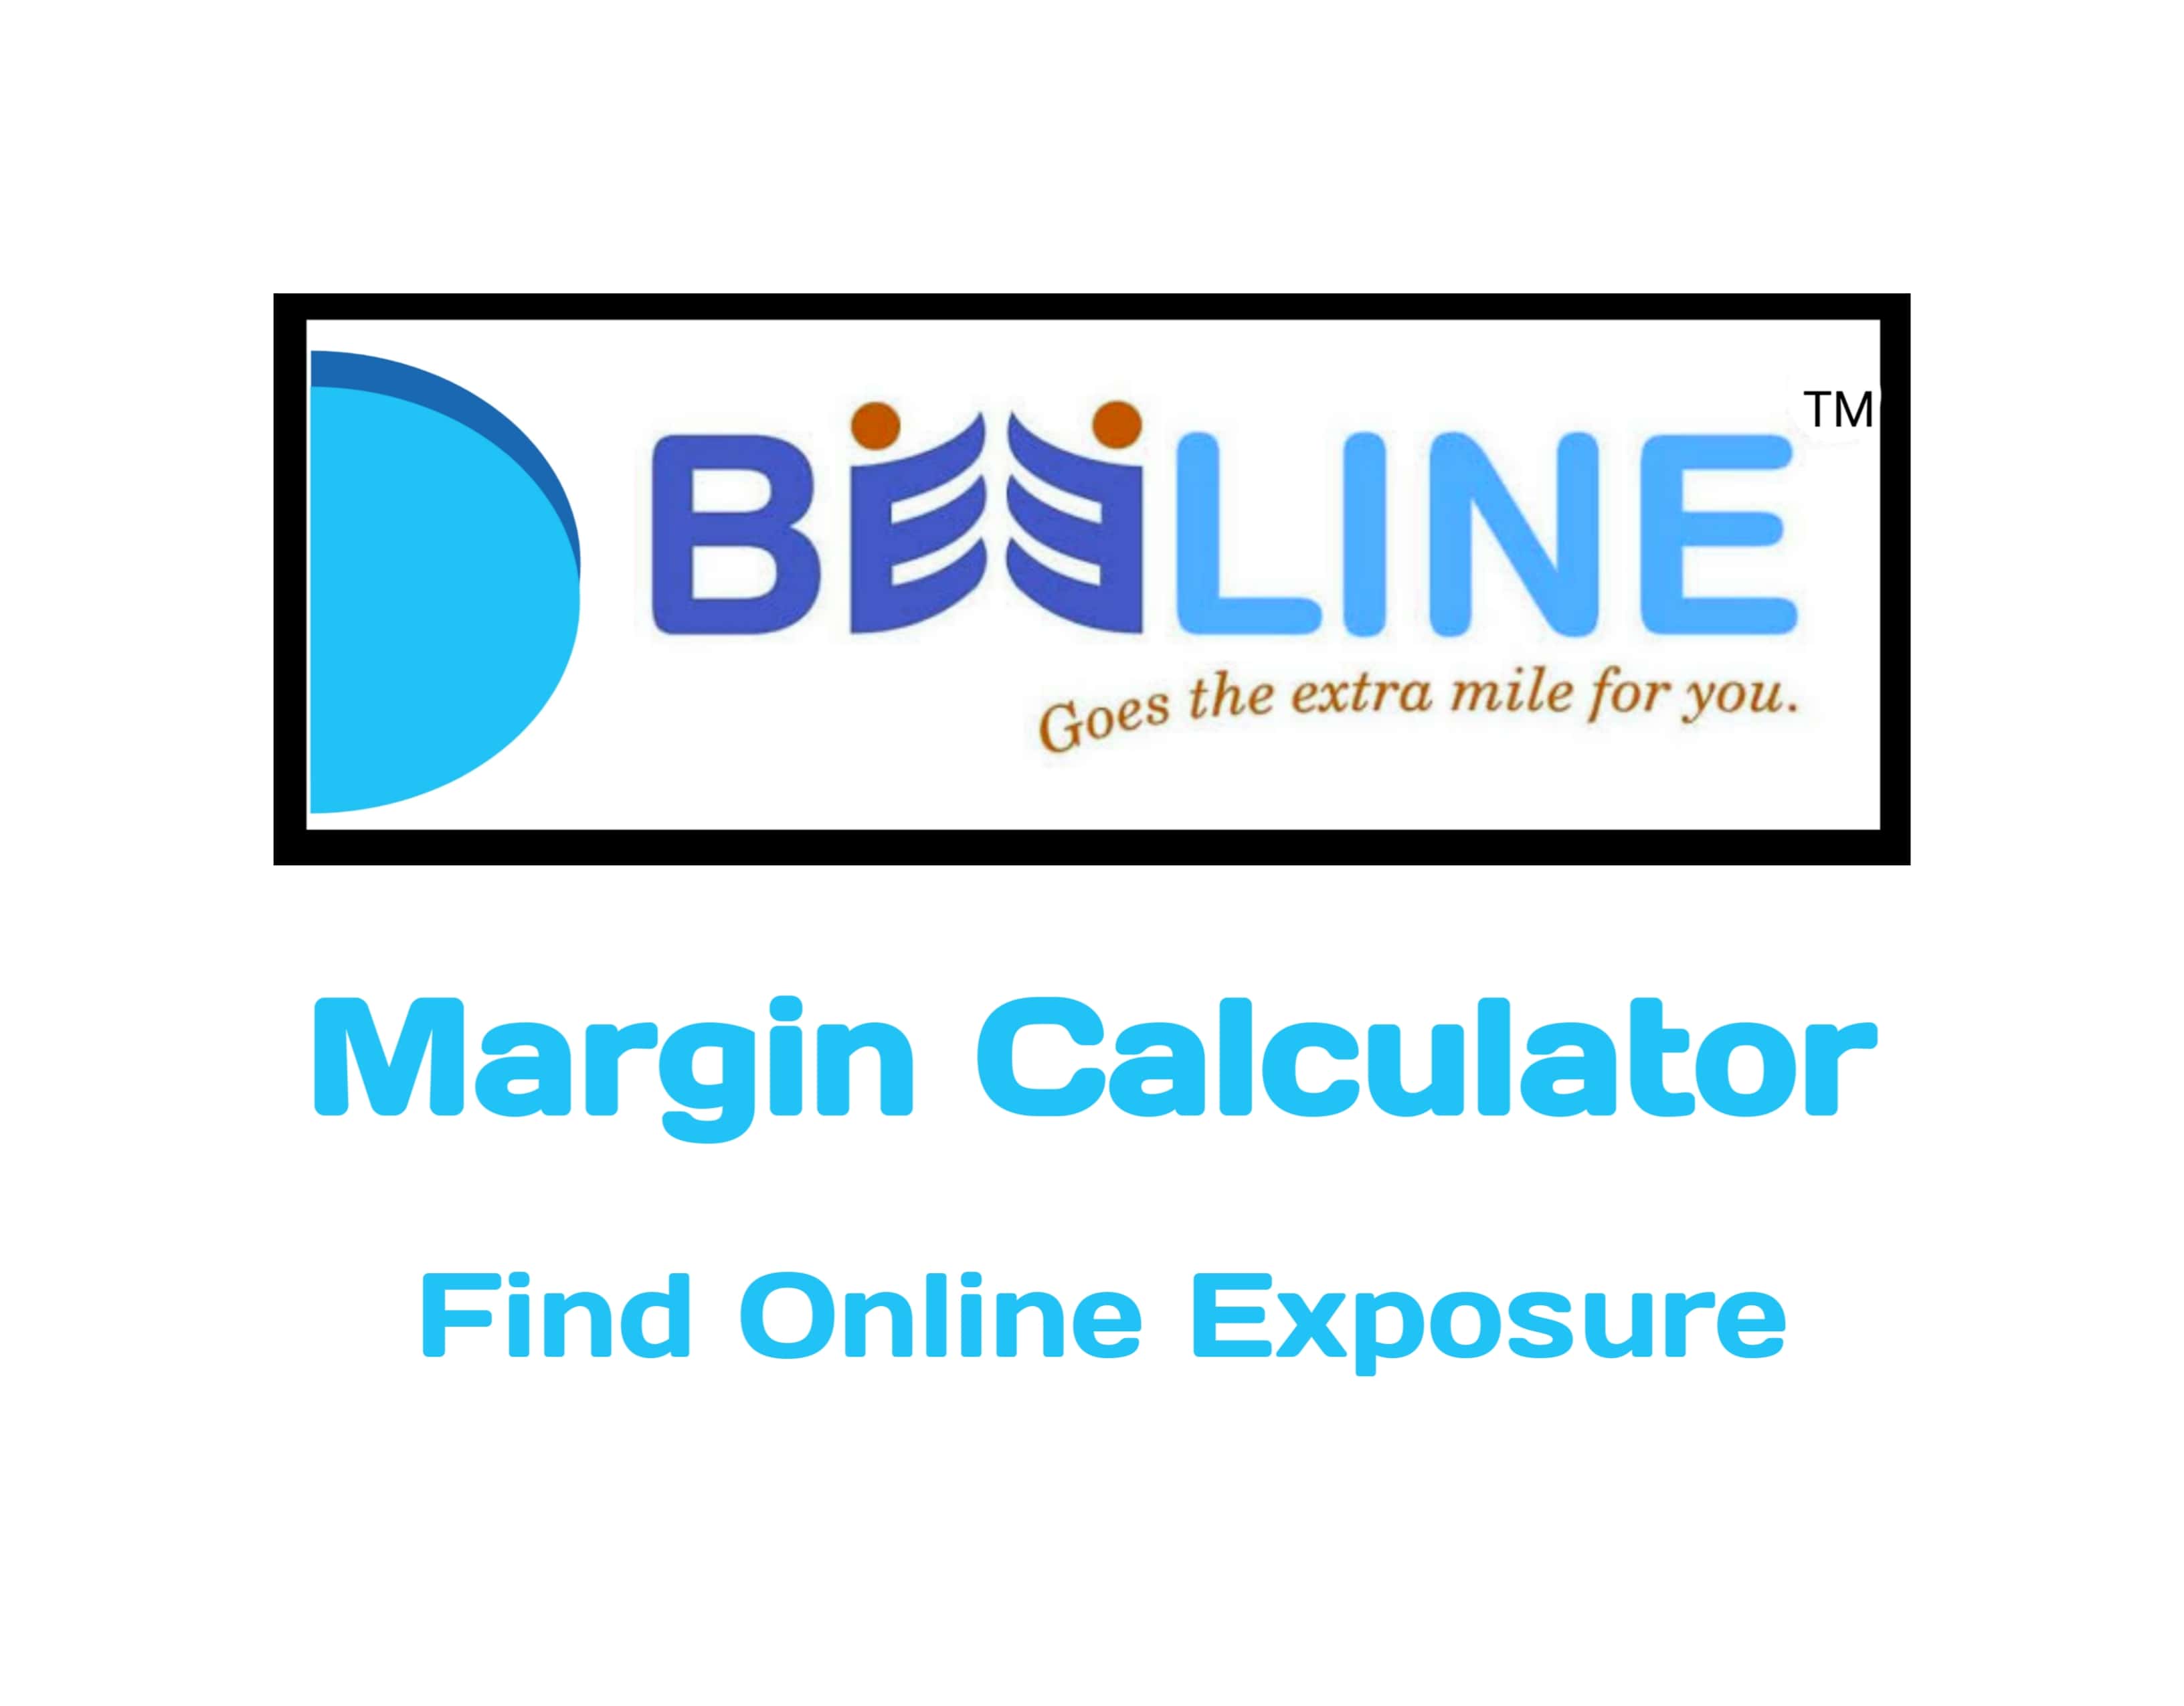 Beeline Securities Margin Calculator